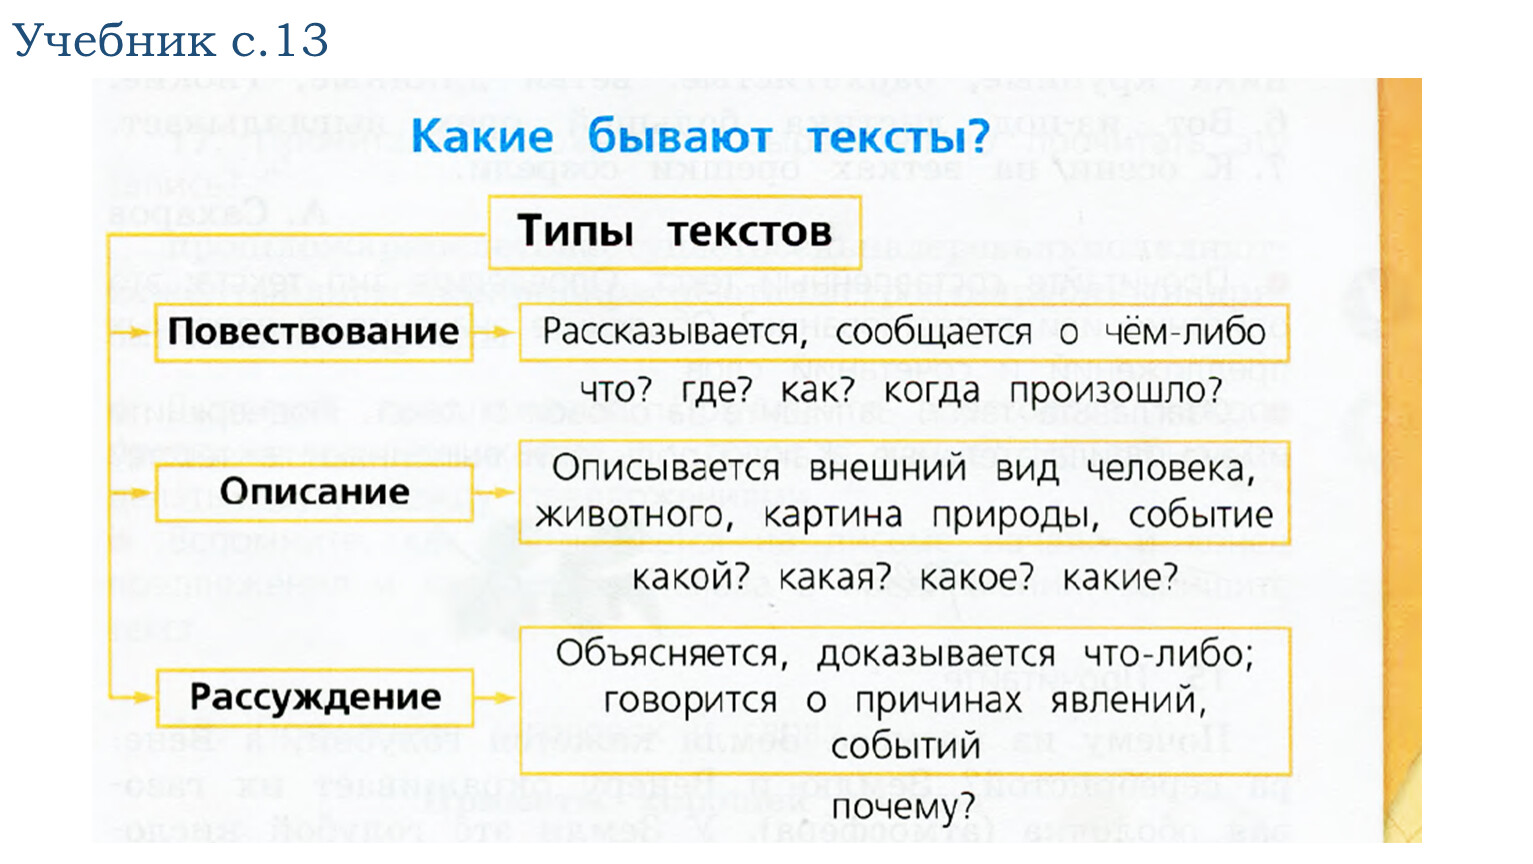 Р р что такое текст. Типы текста в русском языке 3 класс таблица. Типы текста в русском языке таблица. Типы текста в русском языке 4. Типы текста 3 класс русский язык.